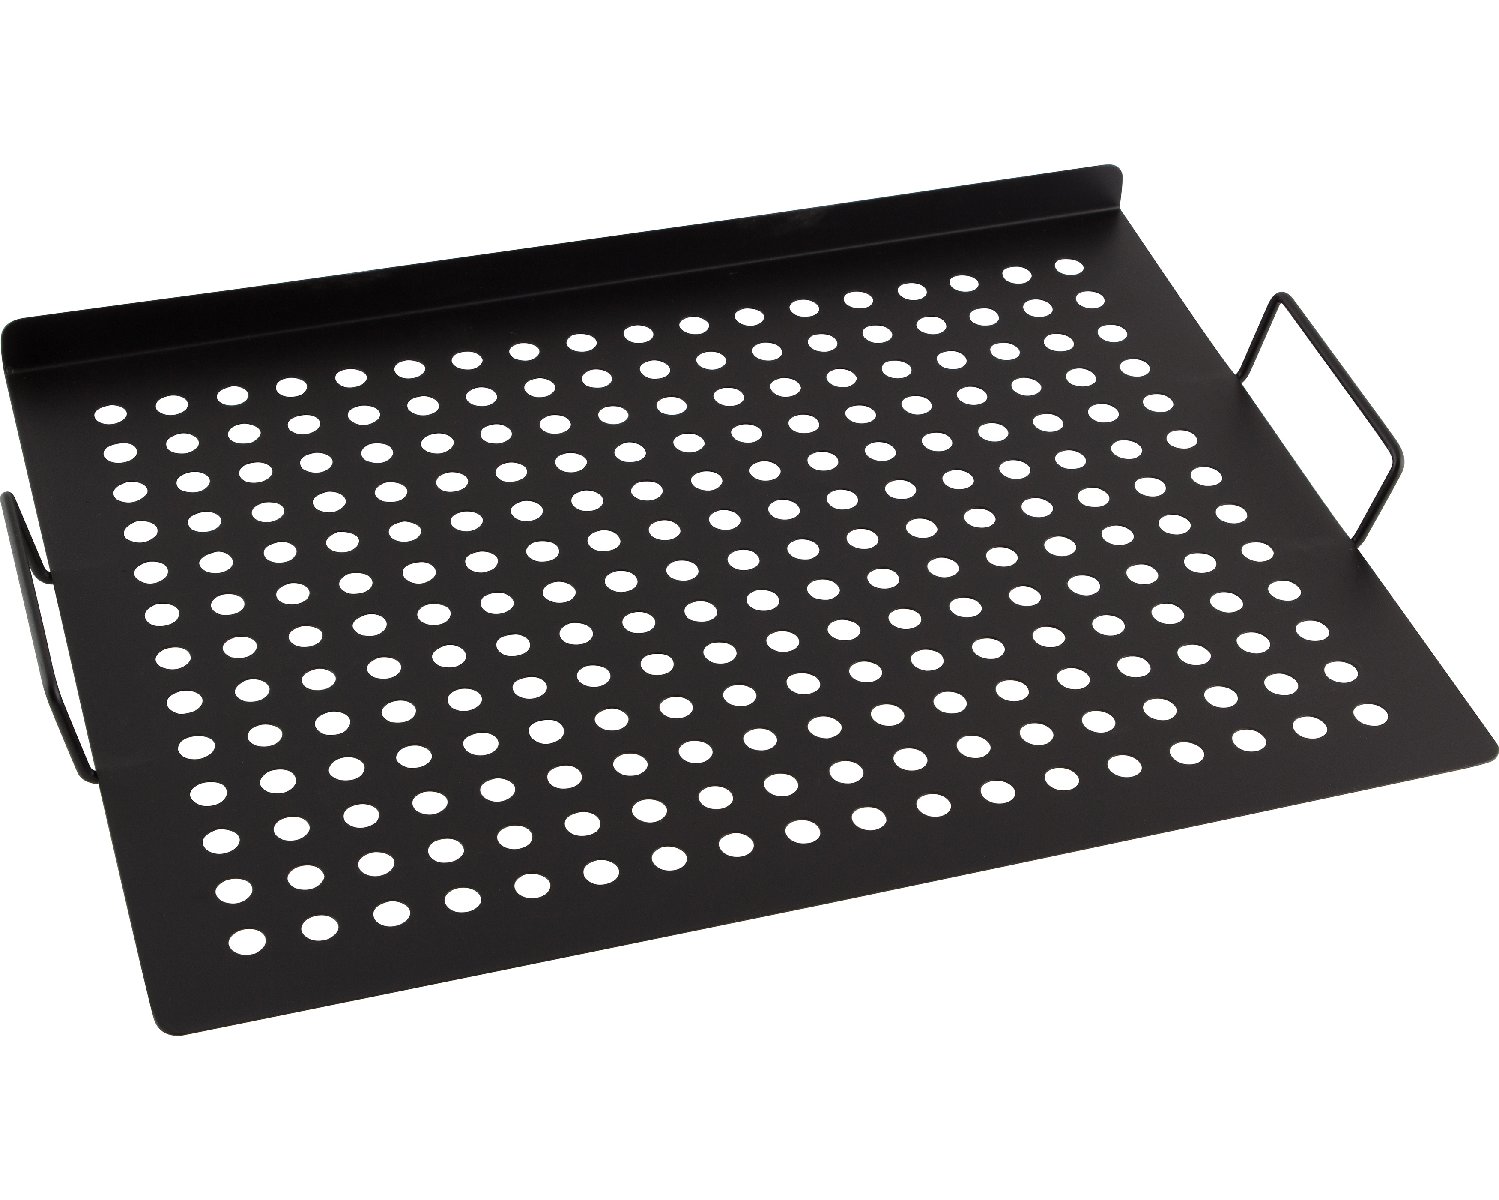 Решетка для мангала гриля с антипригарным покрытием ECOS RD-667, р-р 30x40см. (999667)Купить